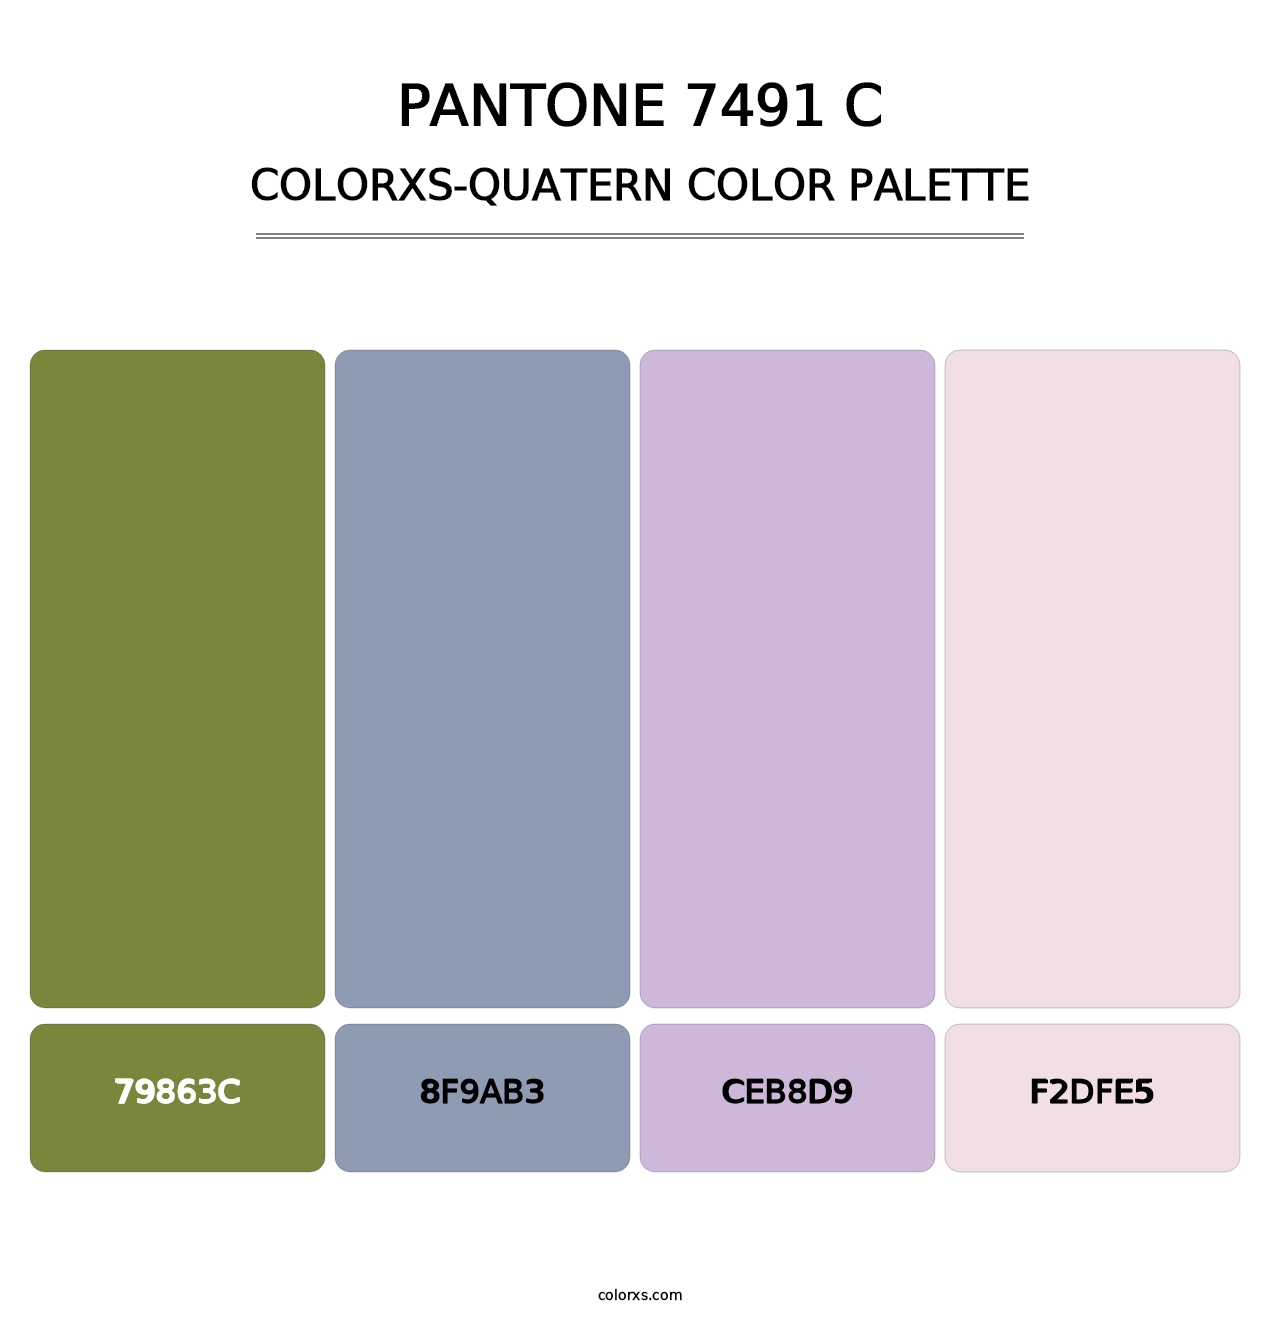 PANTONE 7491 C - Colorxs Quatern Palette